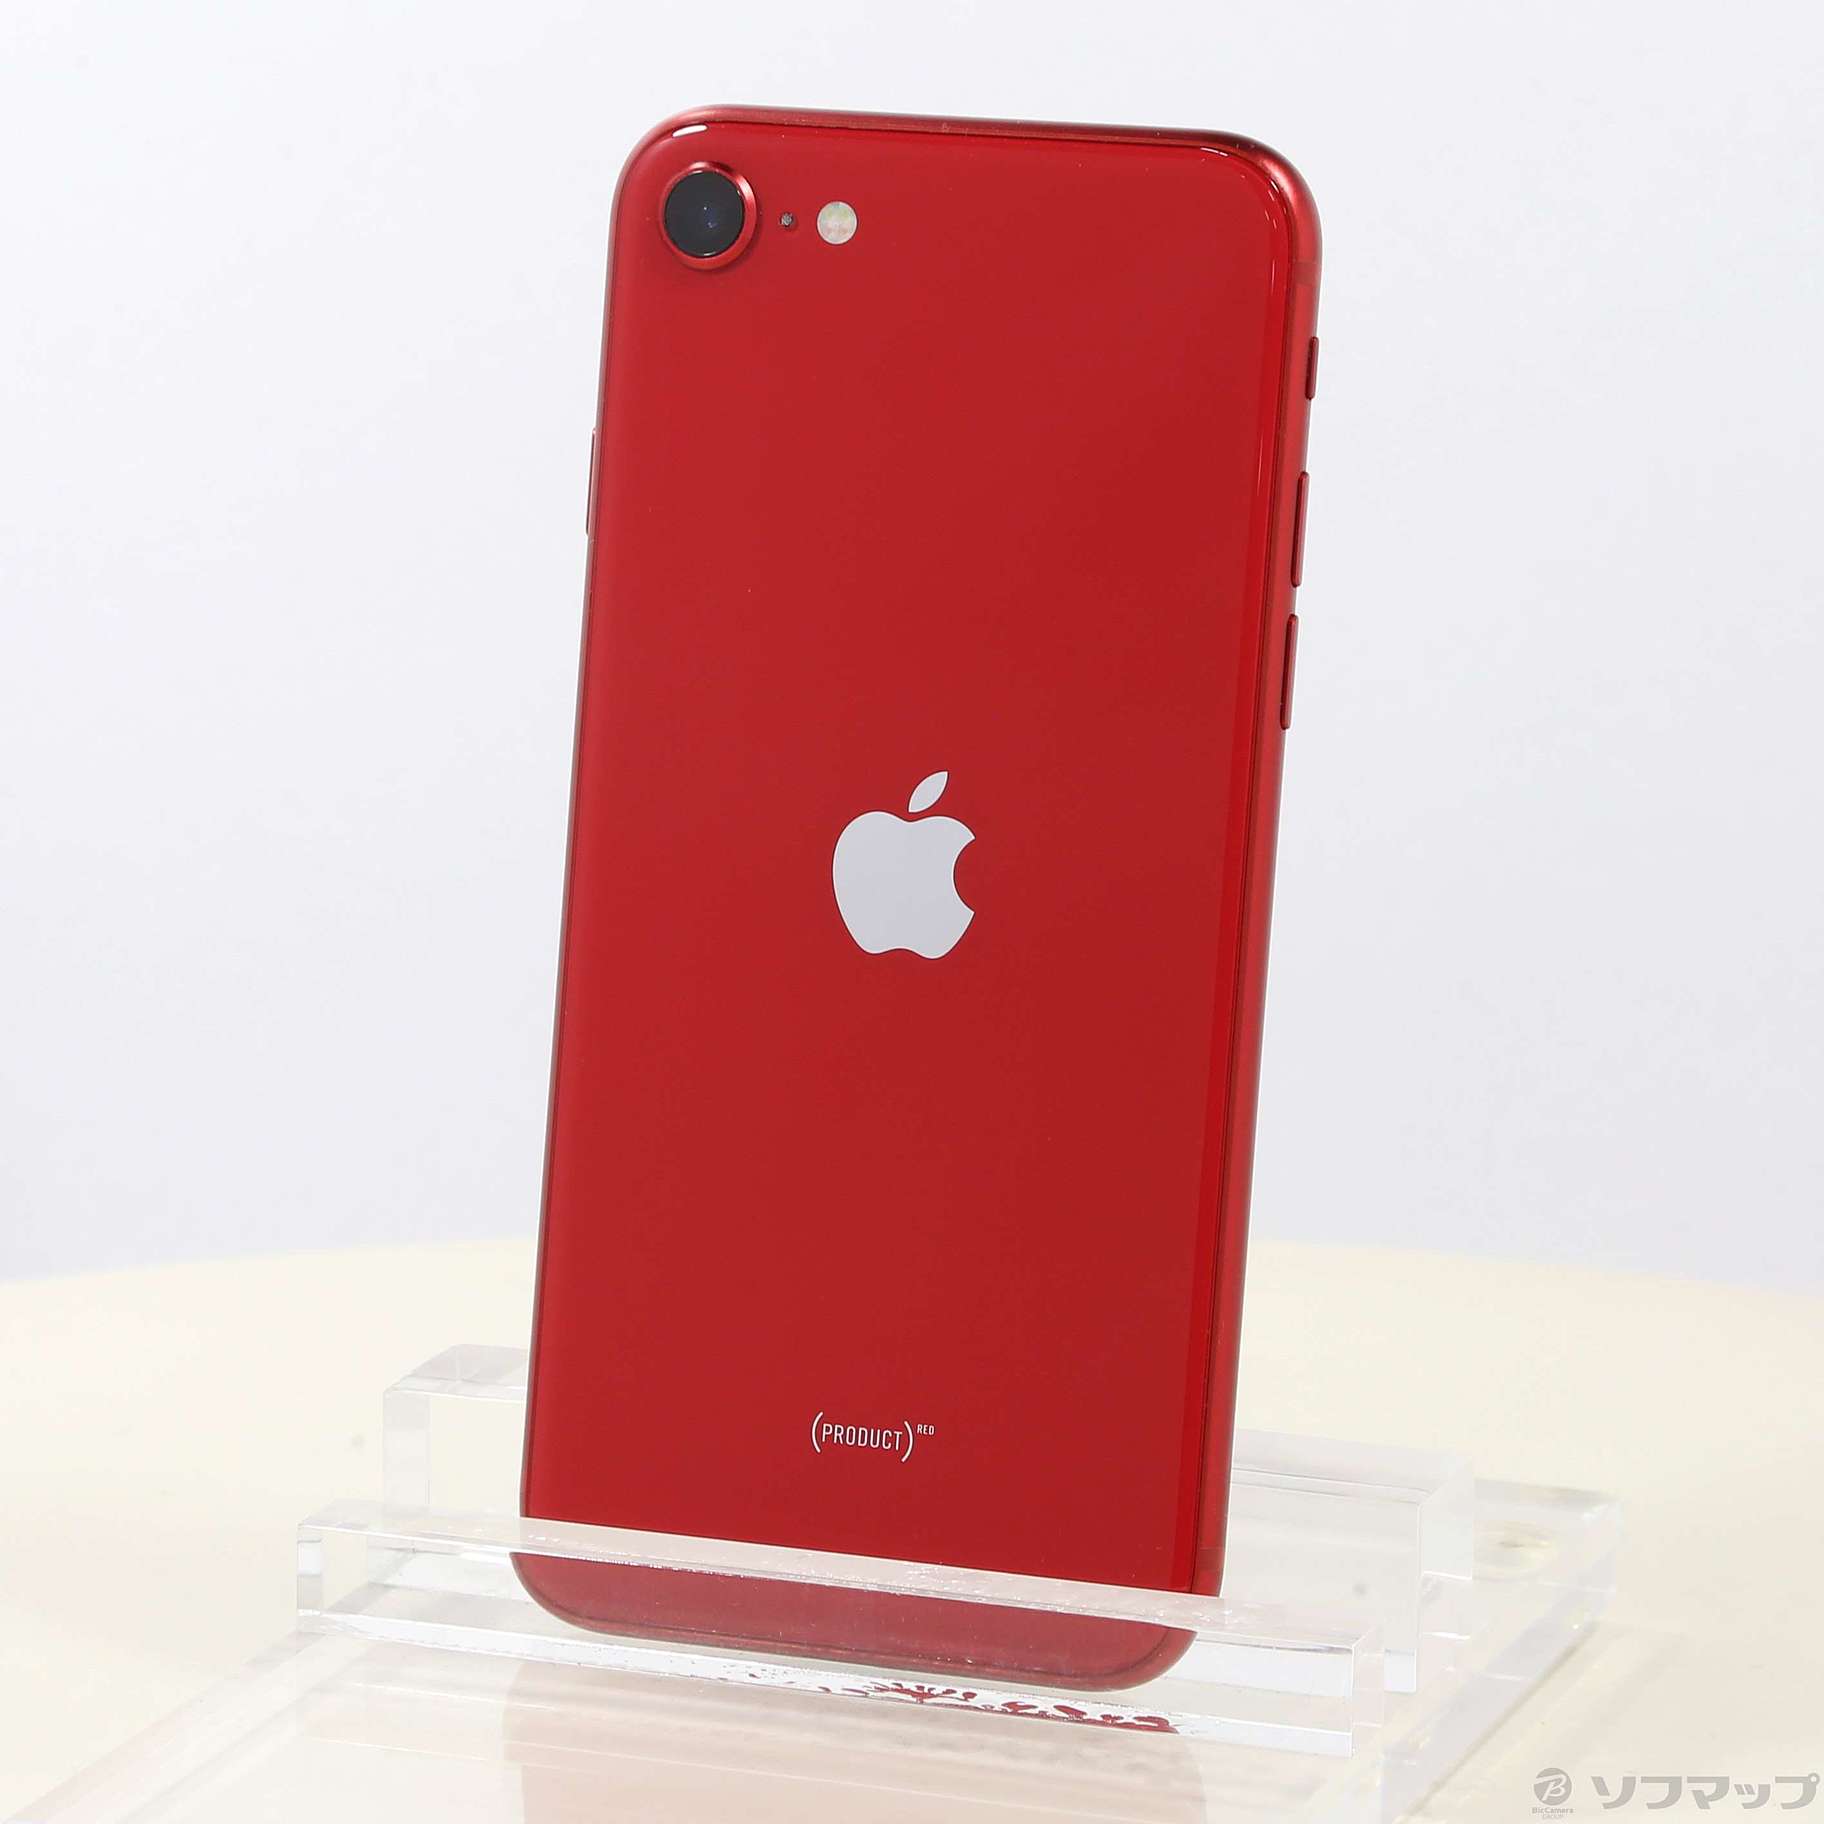 iPhone SE 第2世代 (SE2) 64GB SIMフリー レッド 赤 - スマートフォン本体